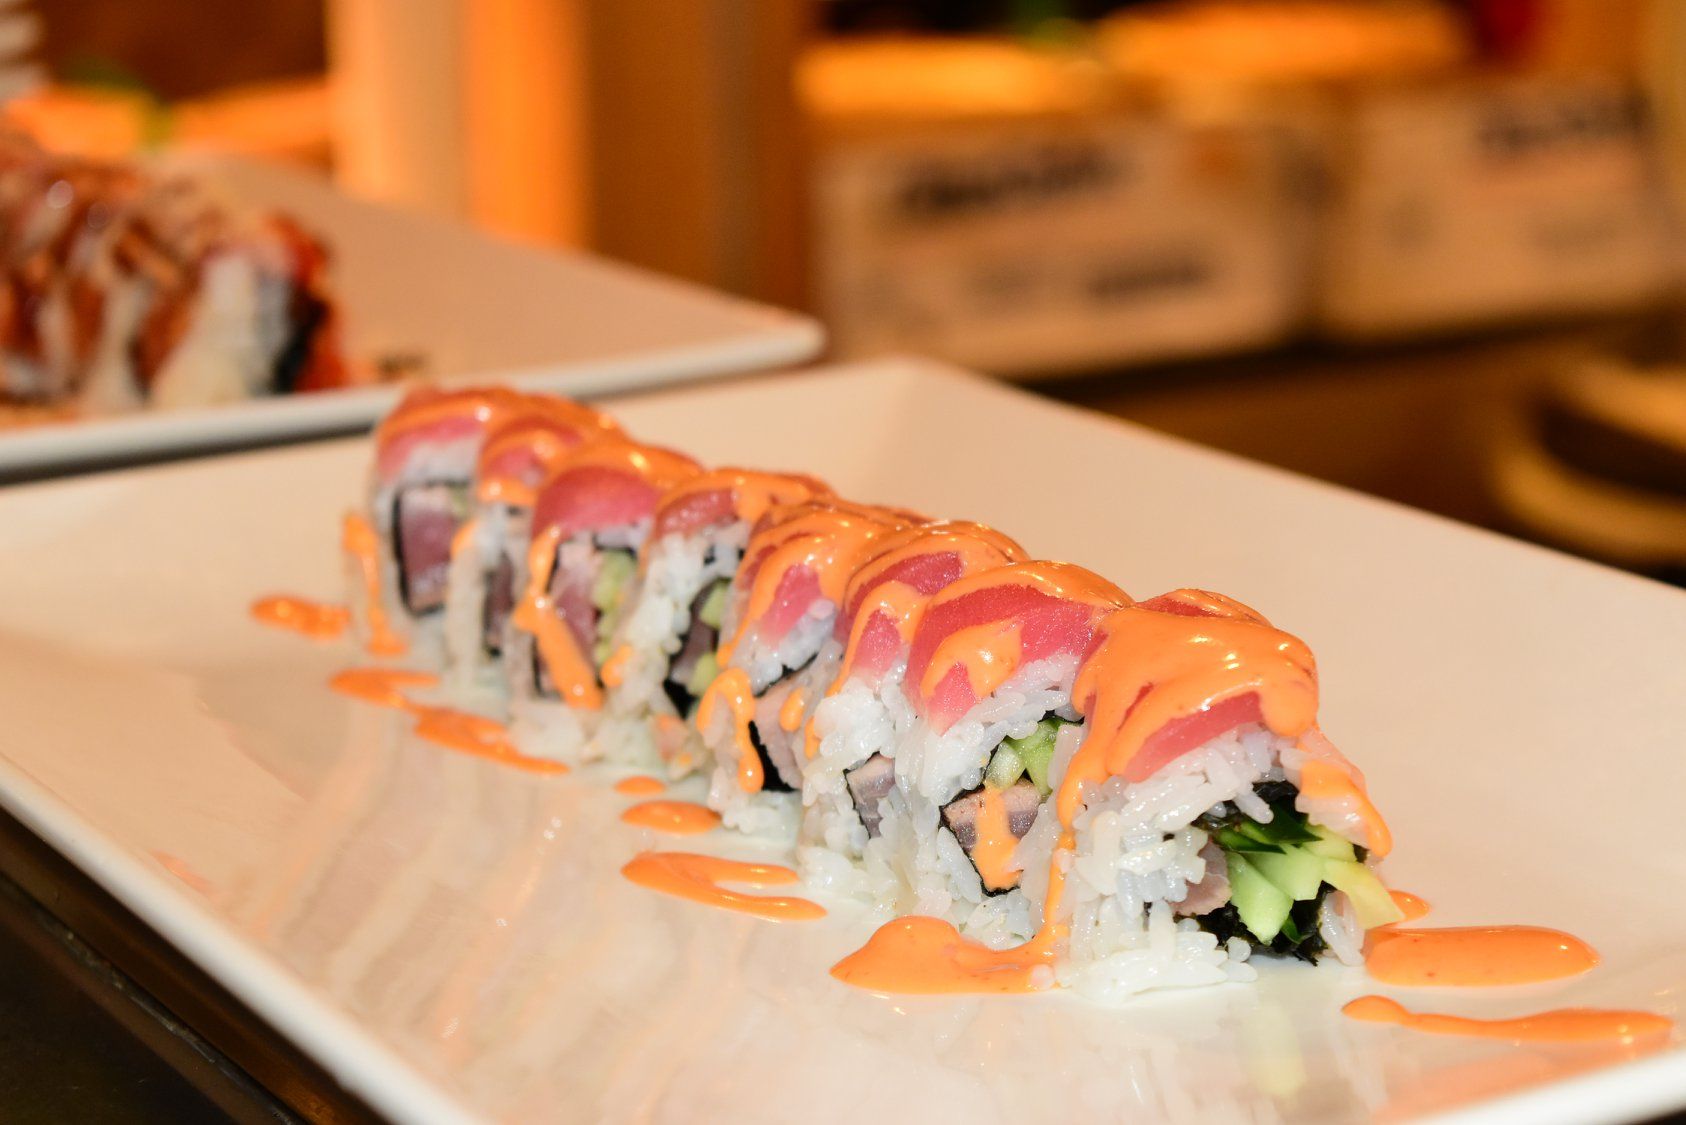 Japanese Food — Sushi Glazed in Orange Sauce in Chico, CA